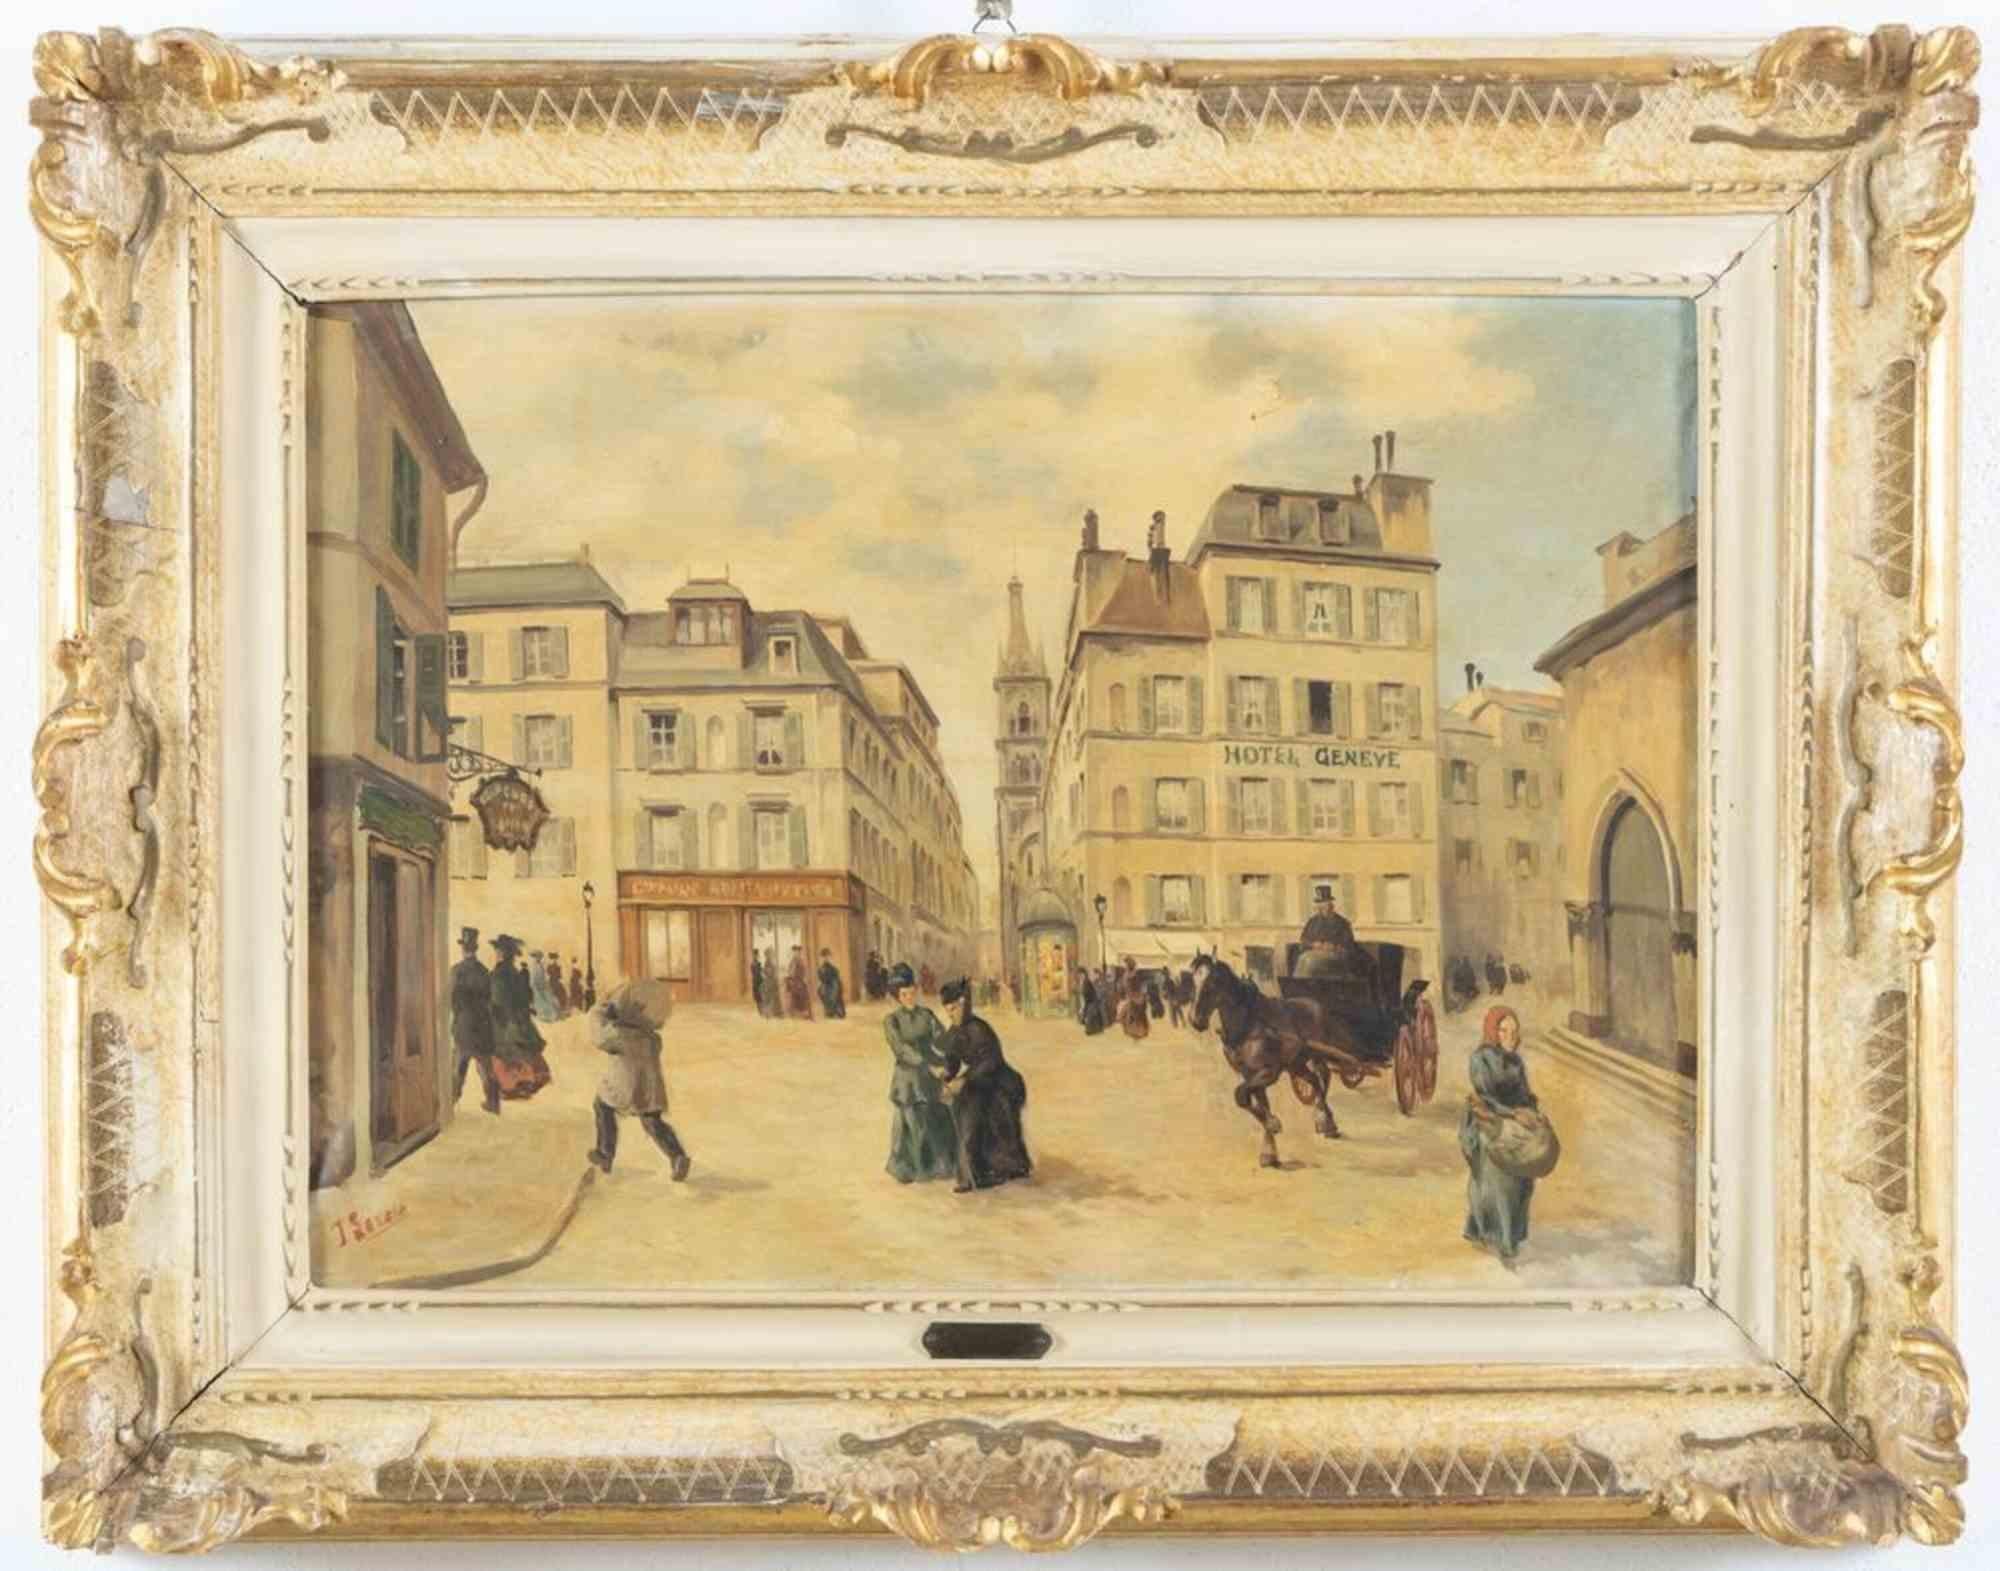 Vieielle France ist ein Original-Ölgemälde auf Leinwand von Jean Lereu aus dem späten 19. Jahrhundert. 

Handsigniert in Rot am unteren linken Rand.

49,5x69 cm mit Rahmen. 

Gute Bedingungen.

Jean Lereu, ein Landschaftsmaler des späten XIX.